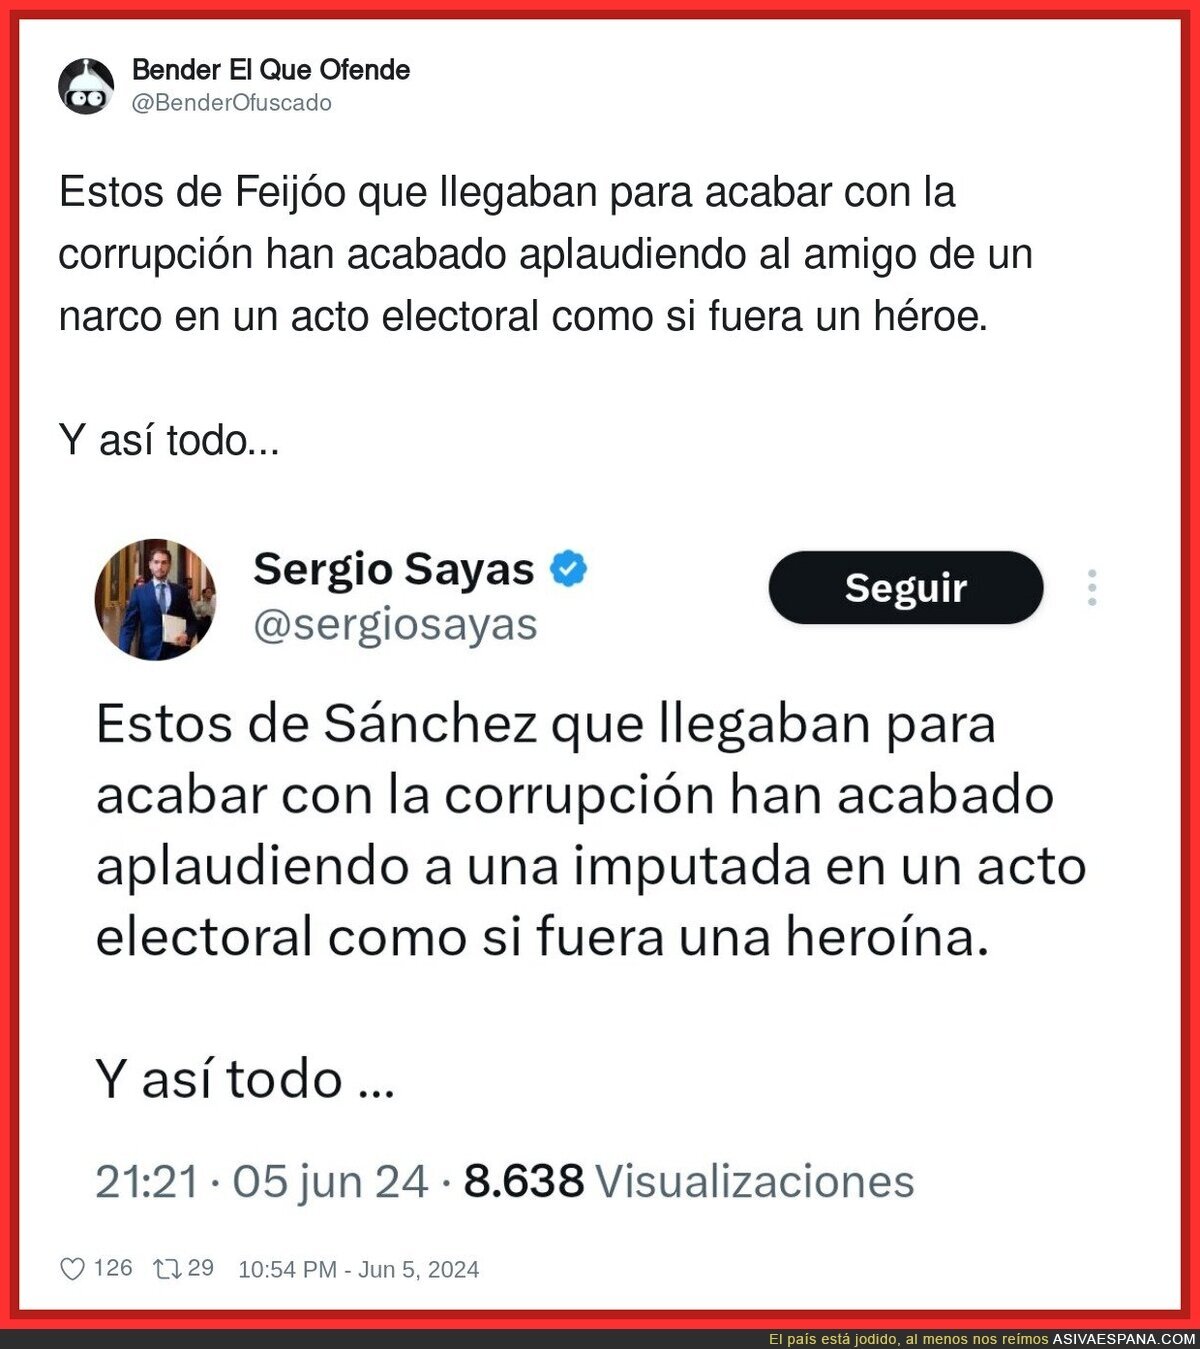 Así es la gente del PP como Sergio Sayas